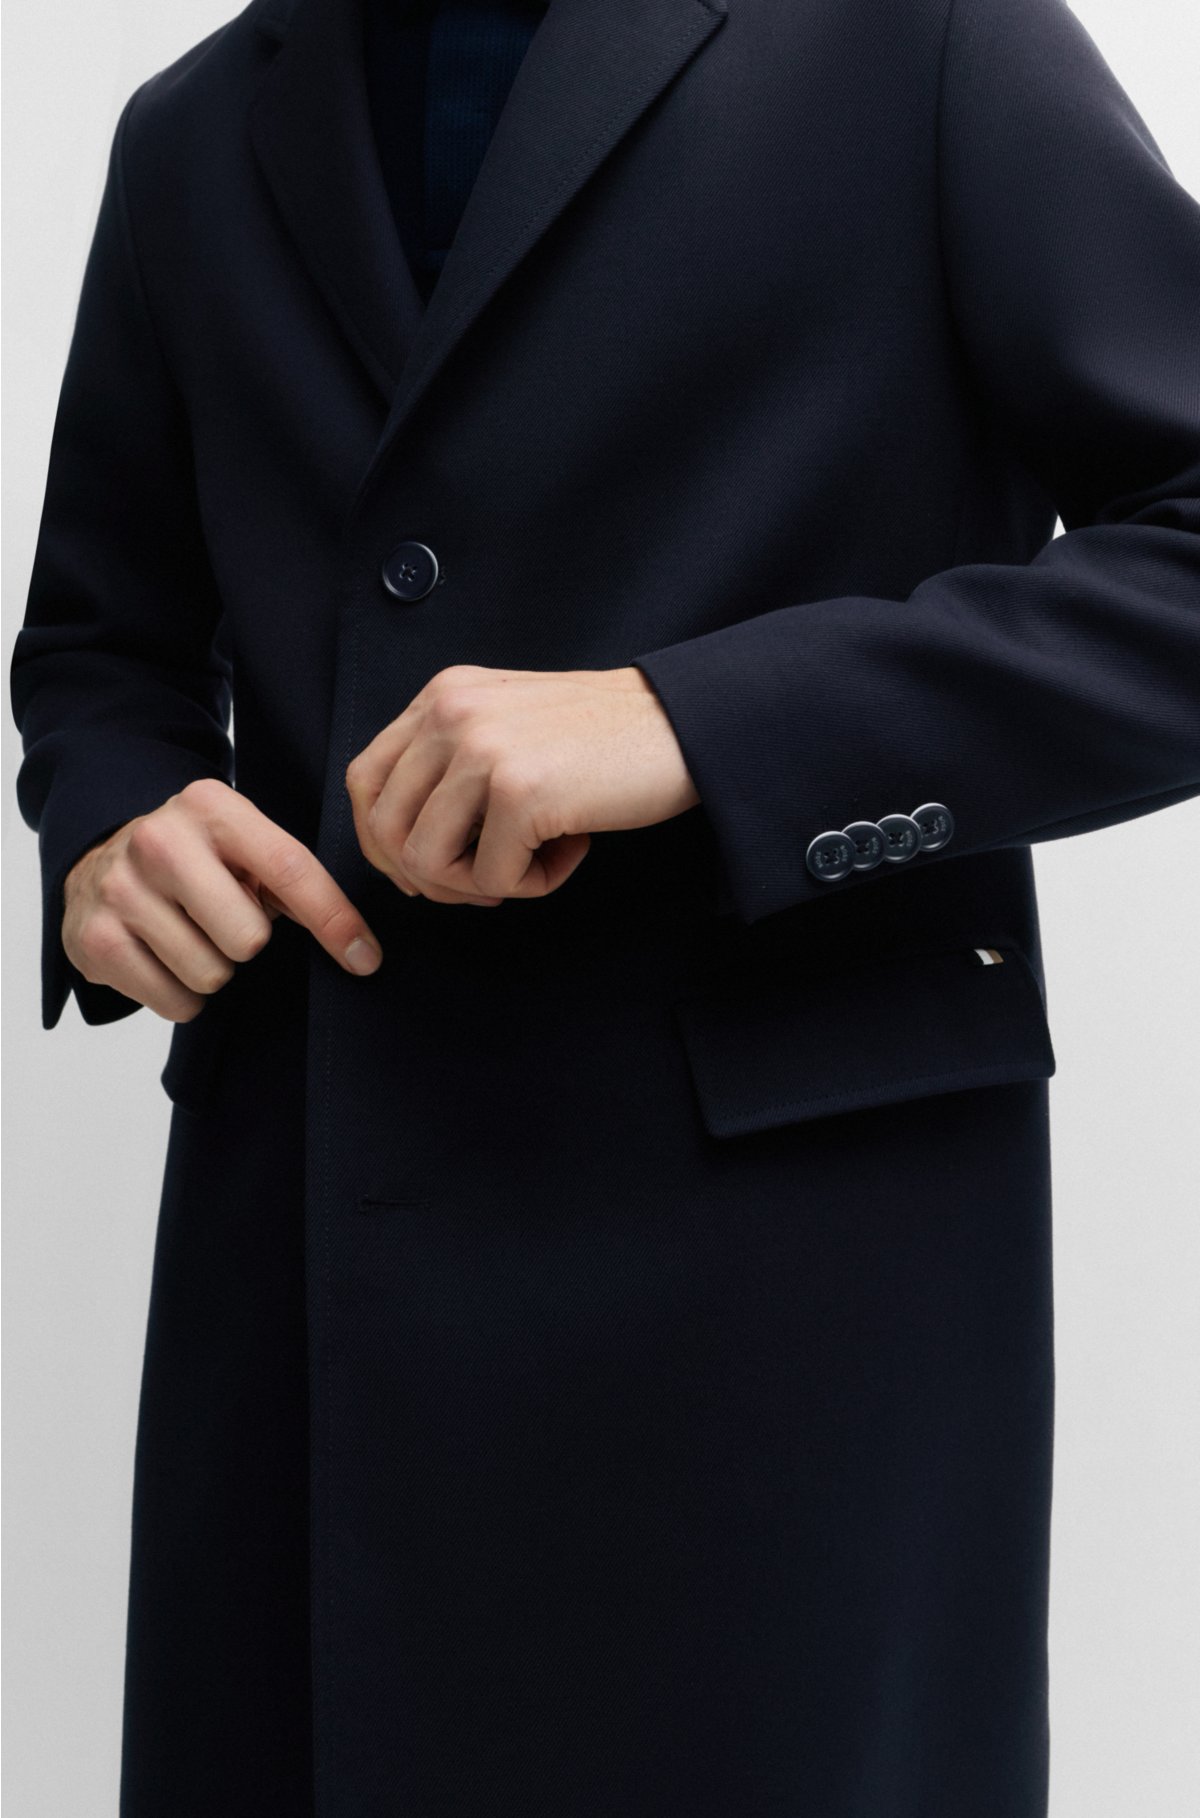 Slim-fit coat in a cotton blend, Dark Blue